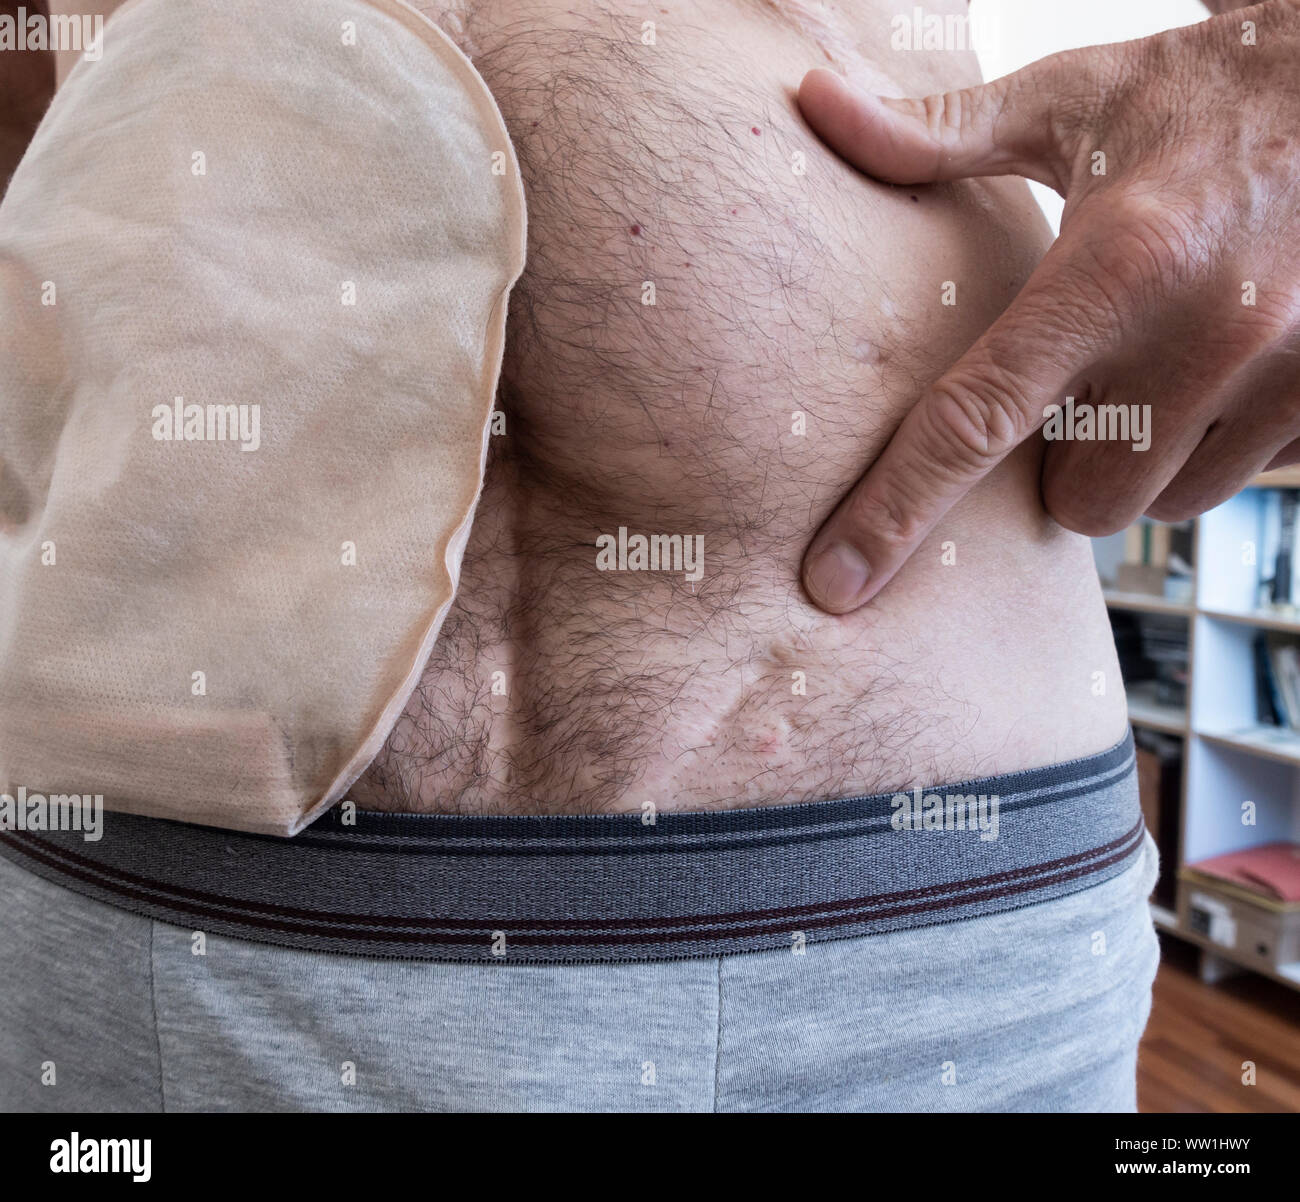 60 jährige Männlich tragen ileostoma Tasche punkte Narbe am linken  Unterbauch, das Ergebnis einer Operation in 1979 zu entfernen Um einen Hoden  (orchiectomy Stockfotografie - Alamy